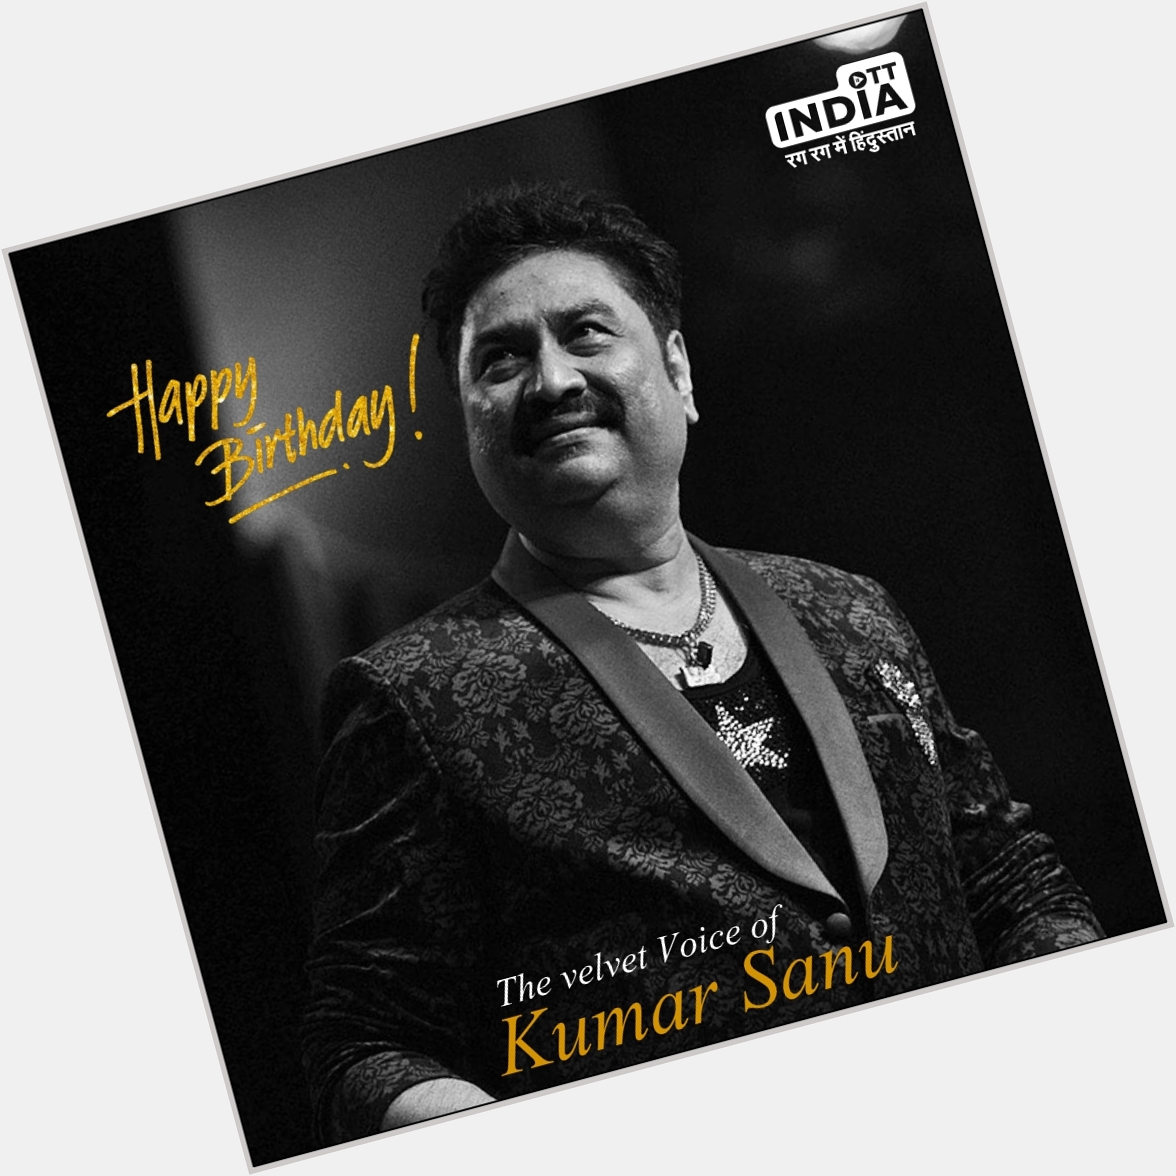 Happy birthday Kumar Sanu..       